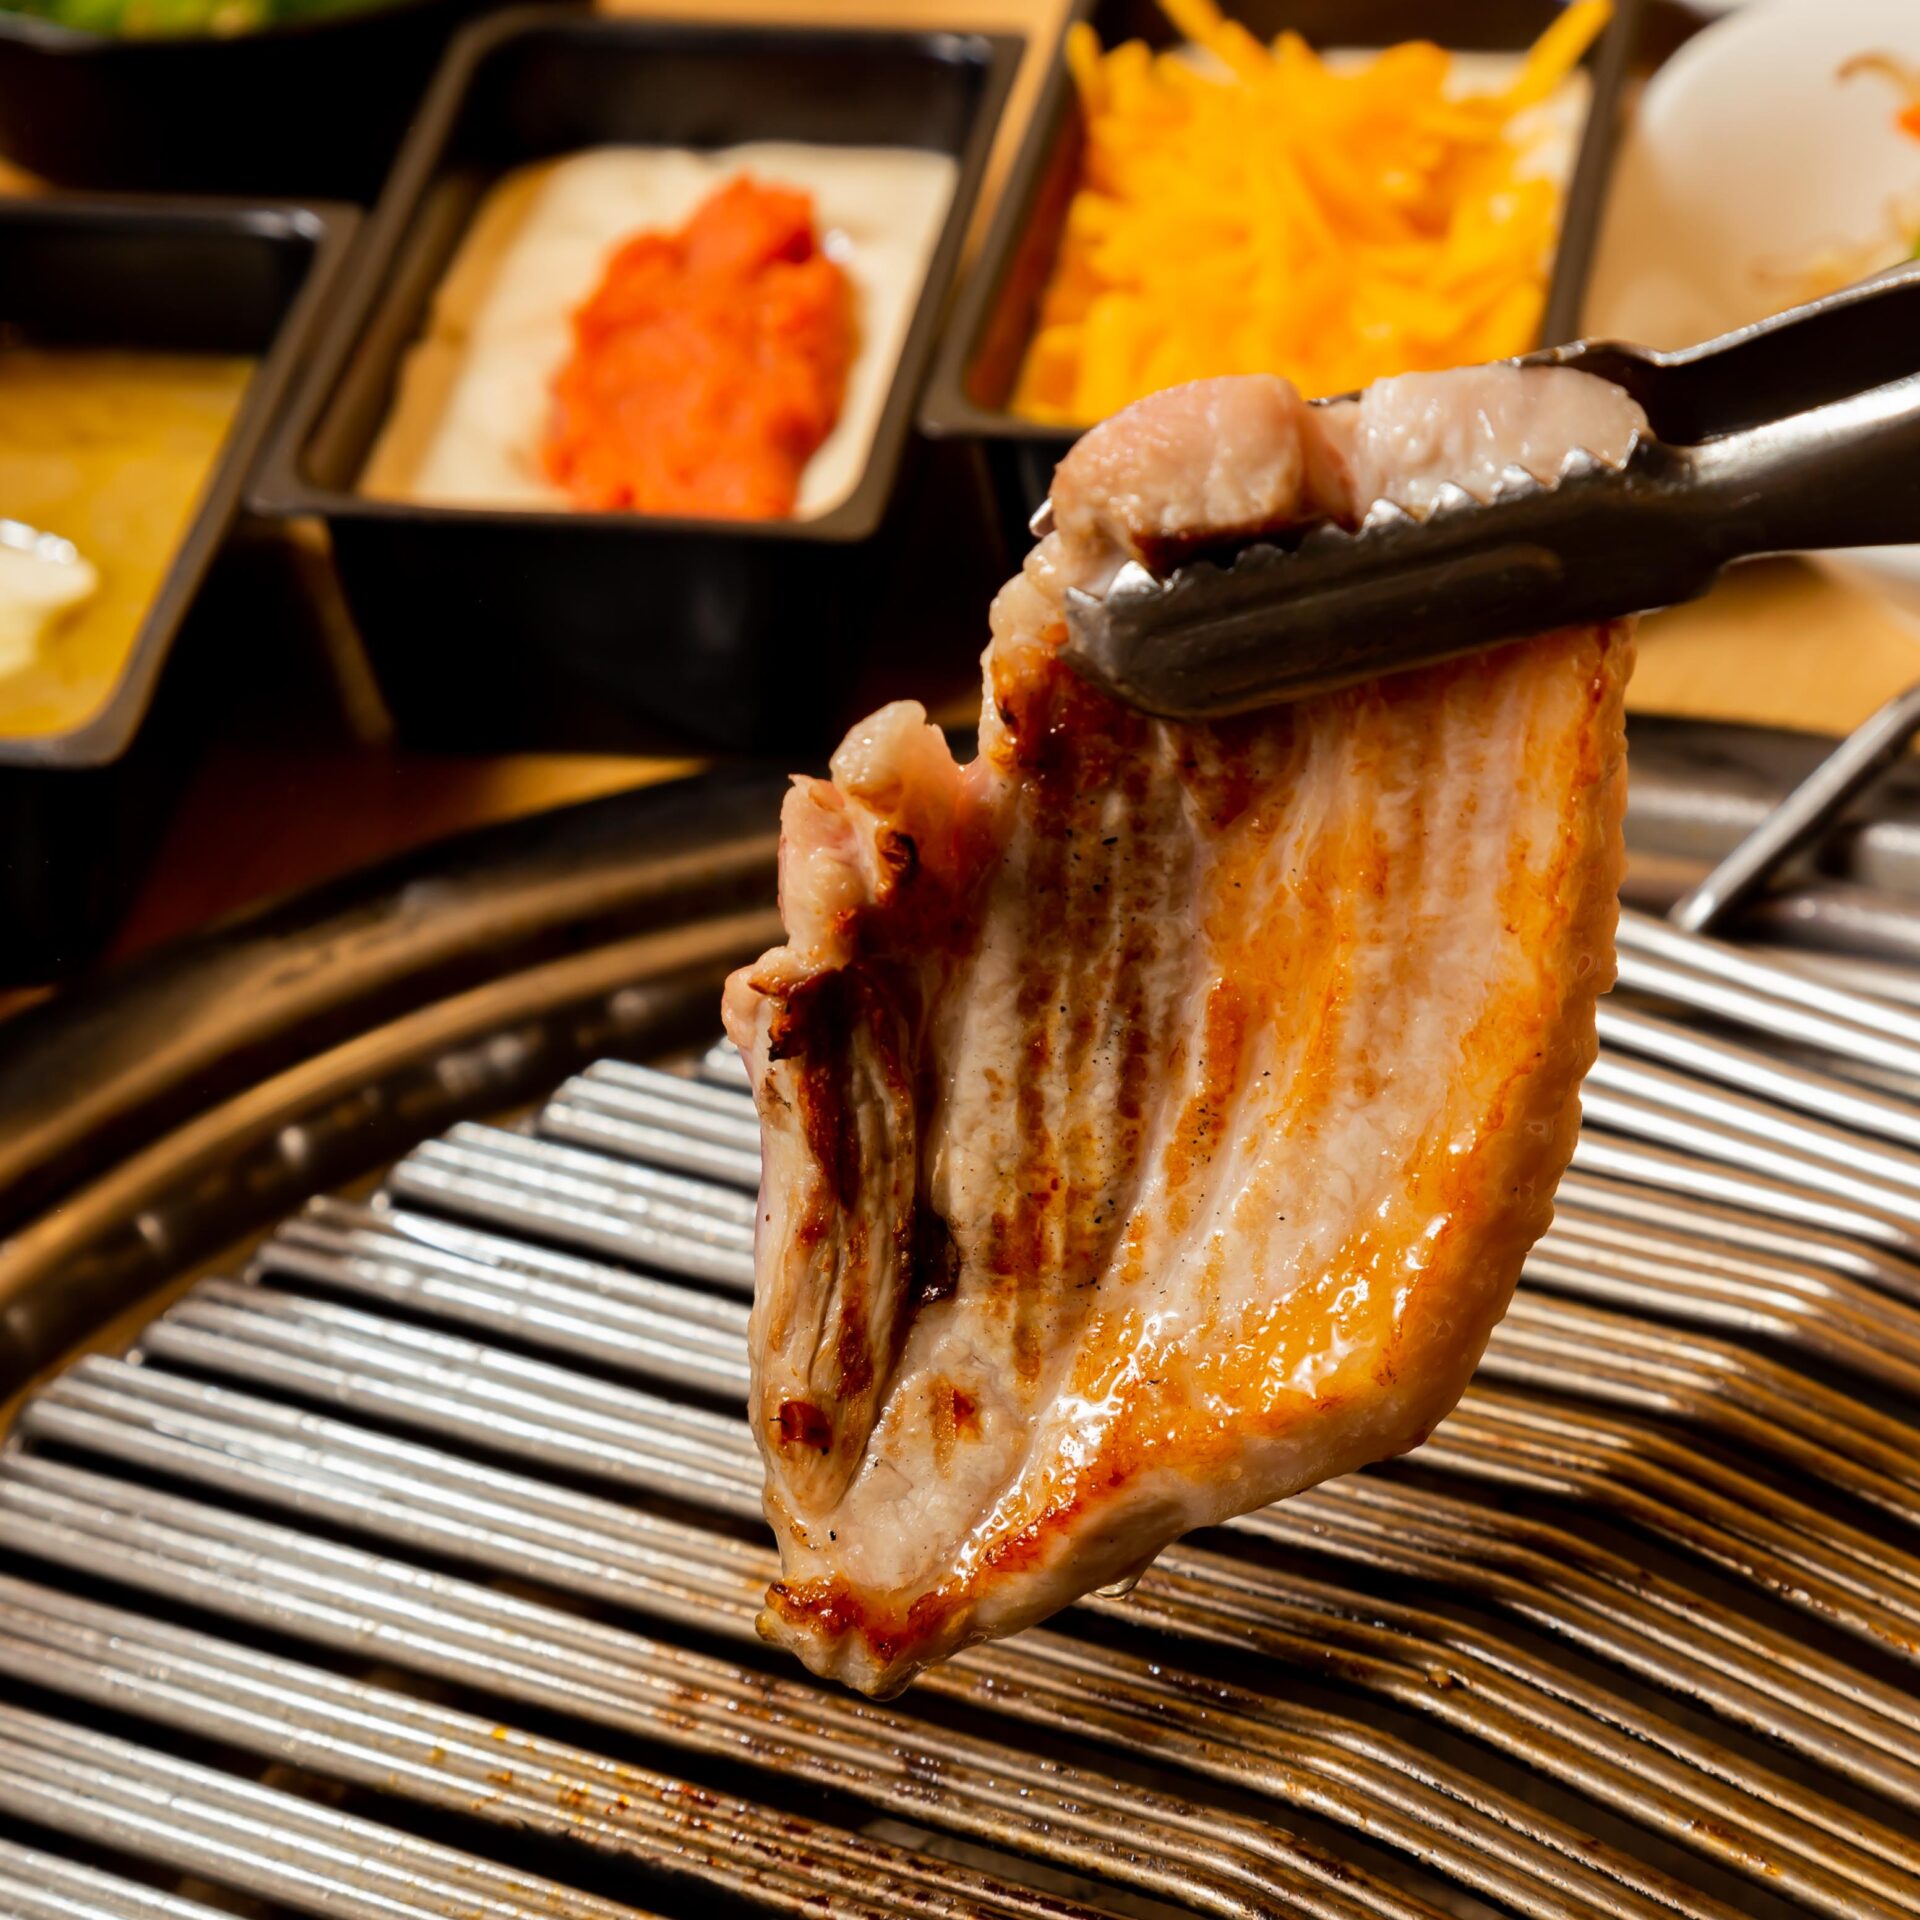 赤坂田町通りにあるサムギョプサルと新鮮野菜が楽しめる「やさい村大地 赤坂田町通り店」の「サムギョプサルのお肉」の画像